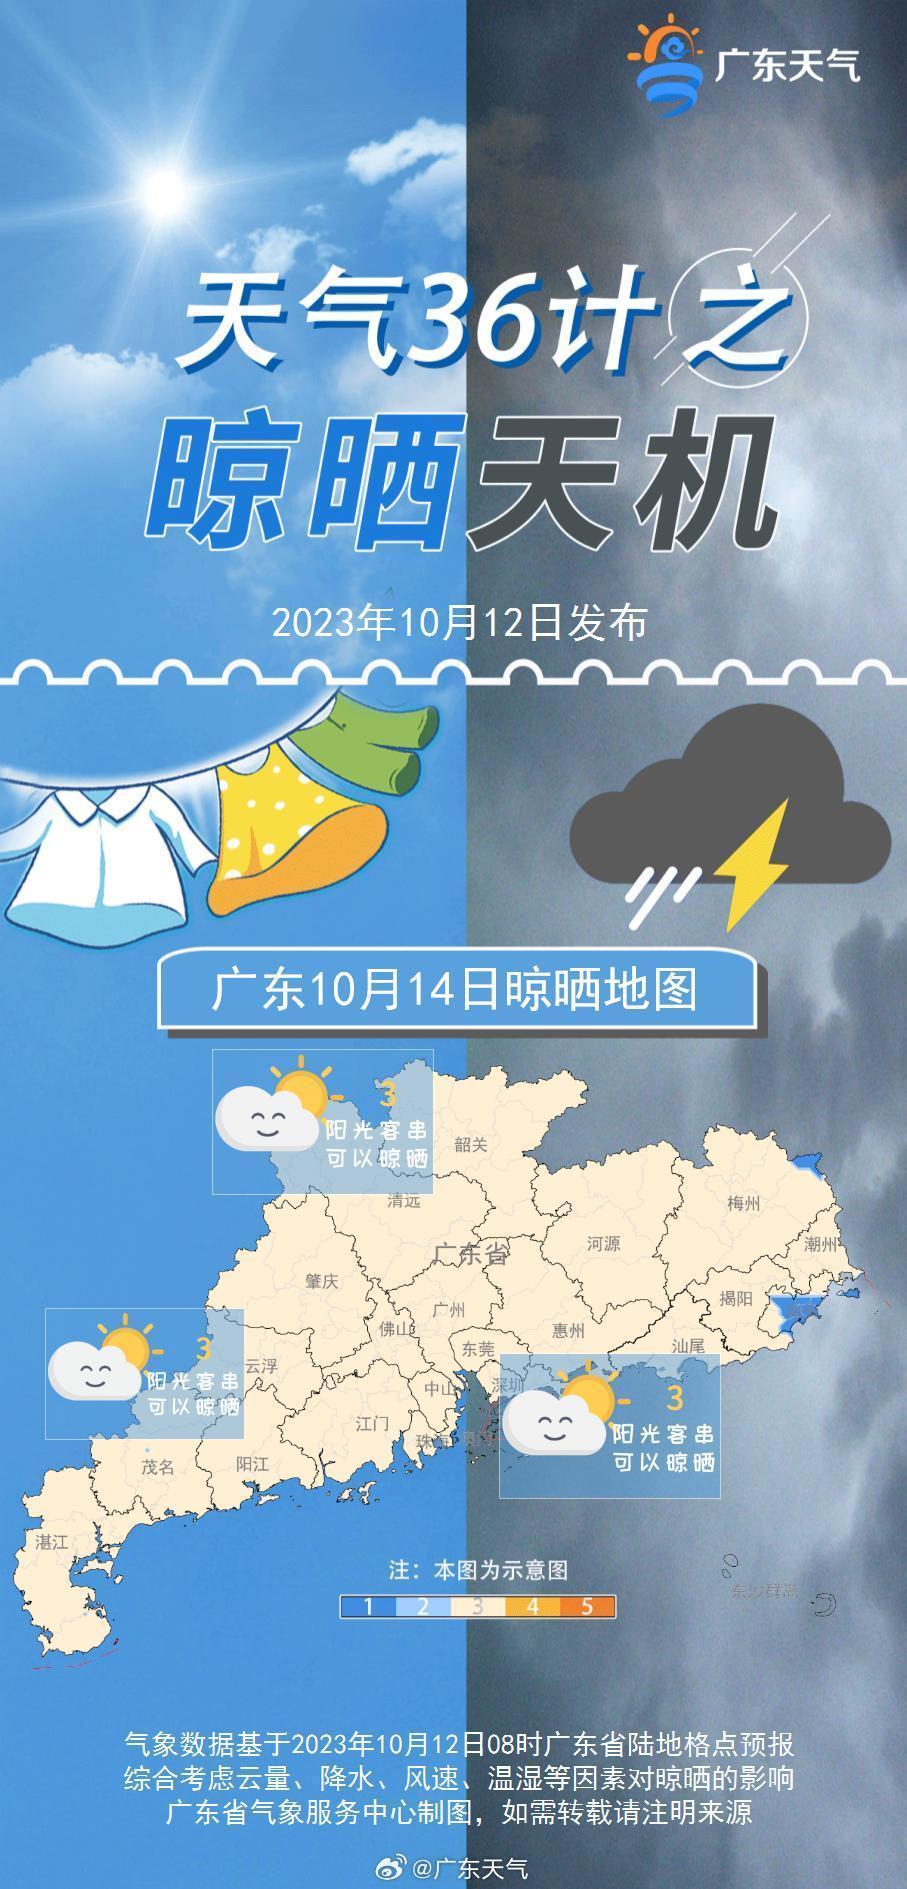 “广东断崖式降温”谣言哪来的？明明往30℃+奔跑了！9